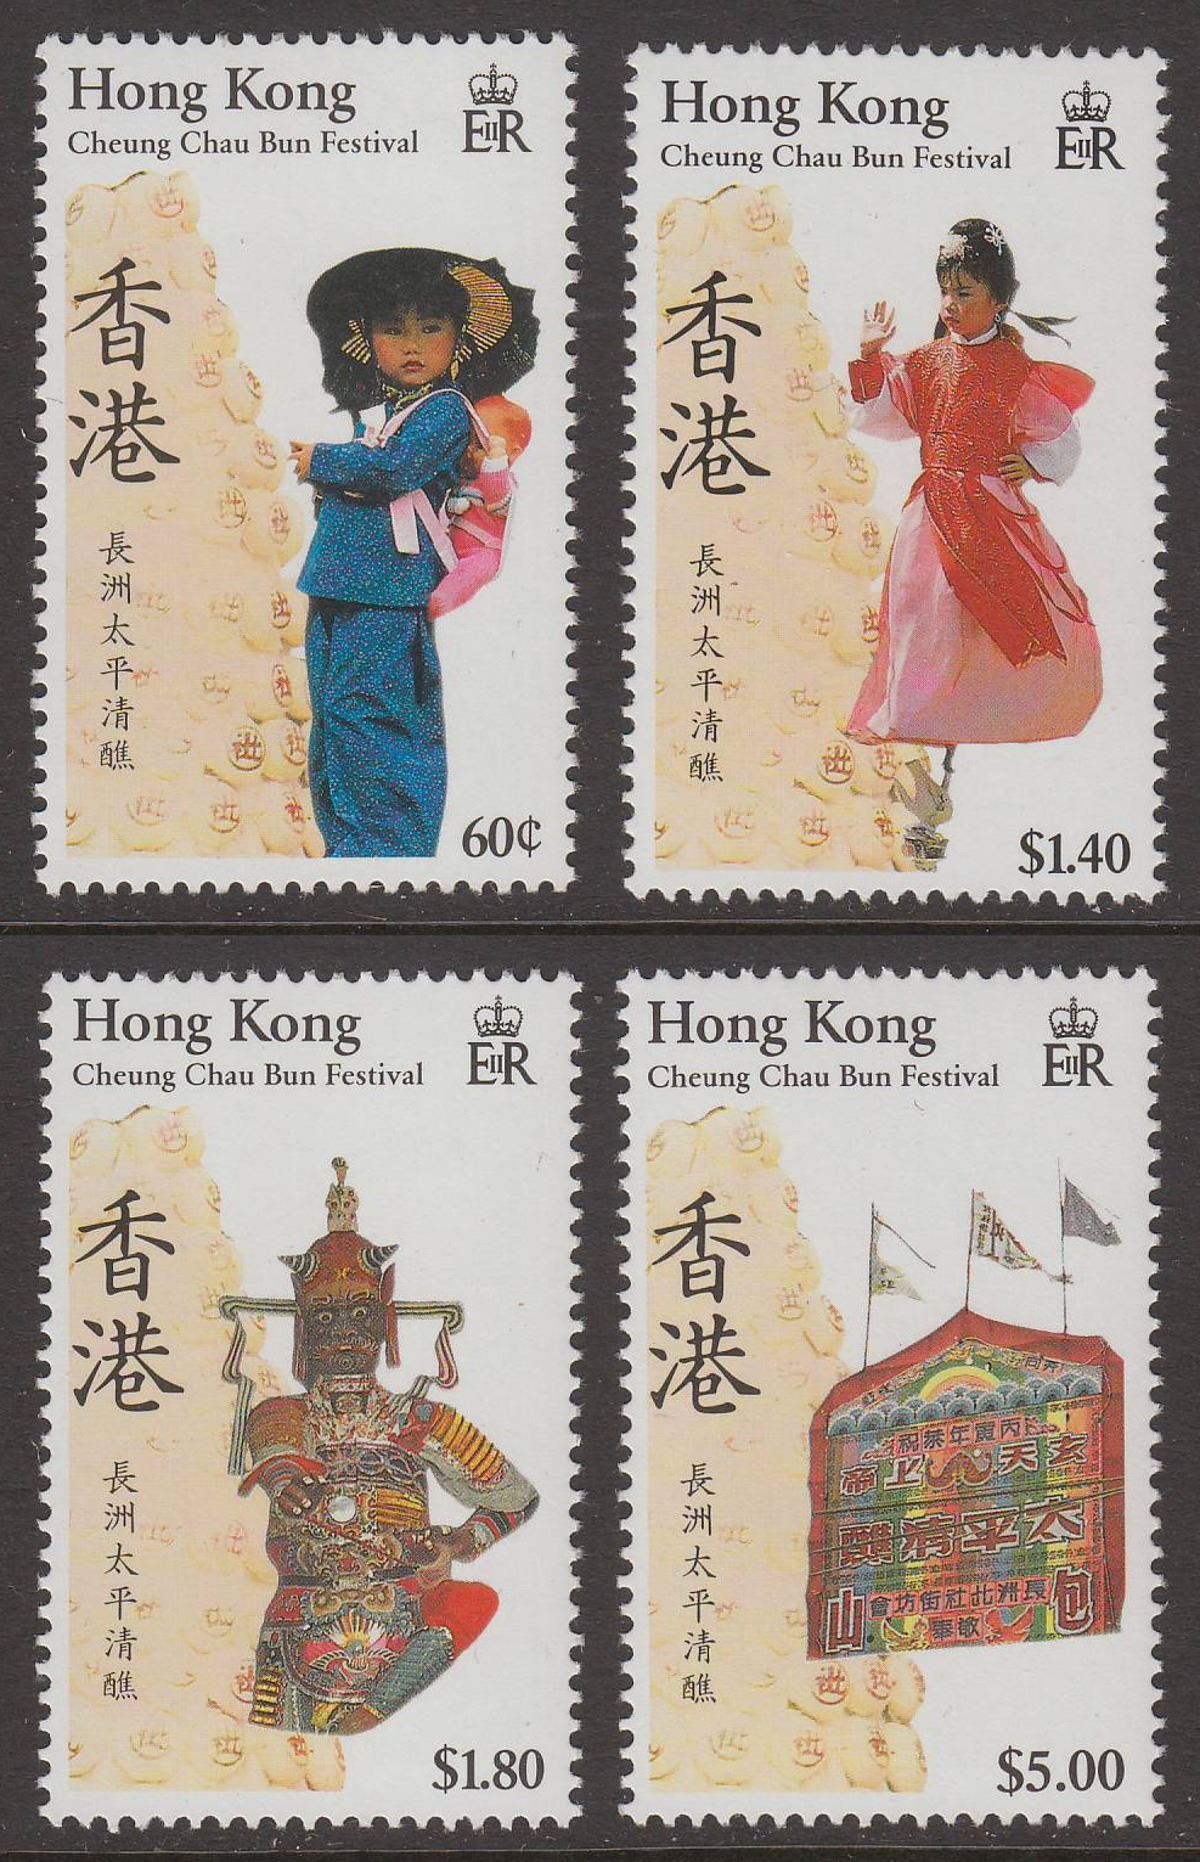 Hong Kong 1989 QEII Cheung Chair Bun Festival Set UM Mint SG592-595 cat £6